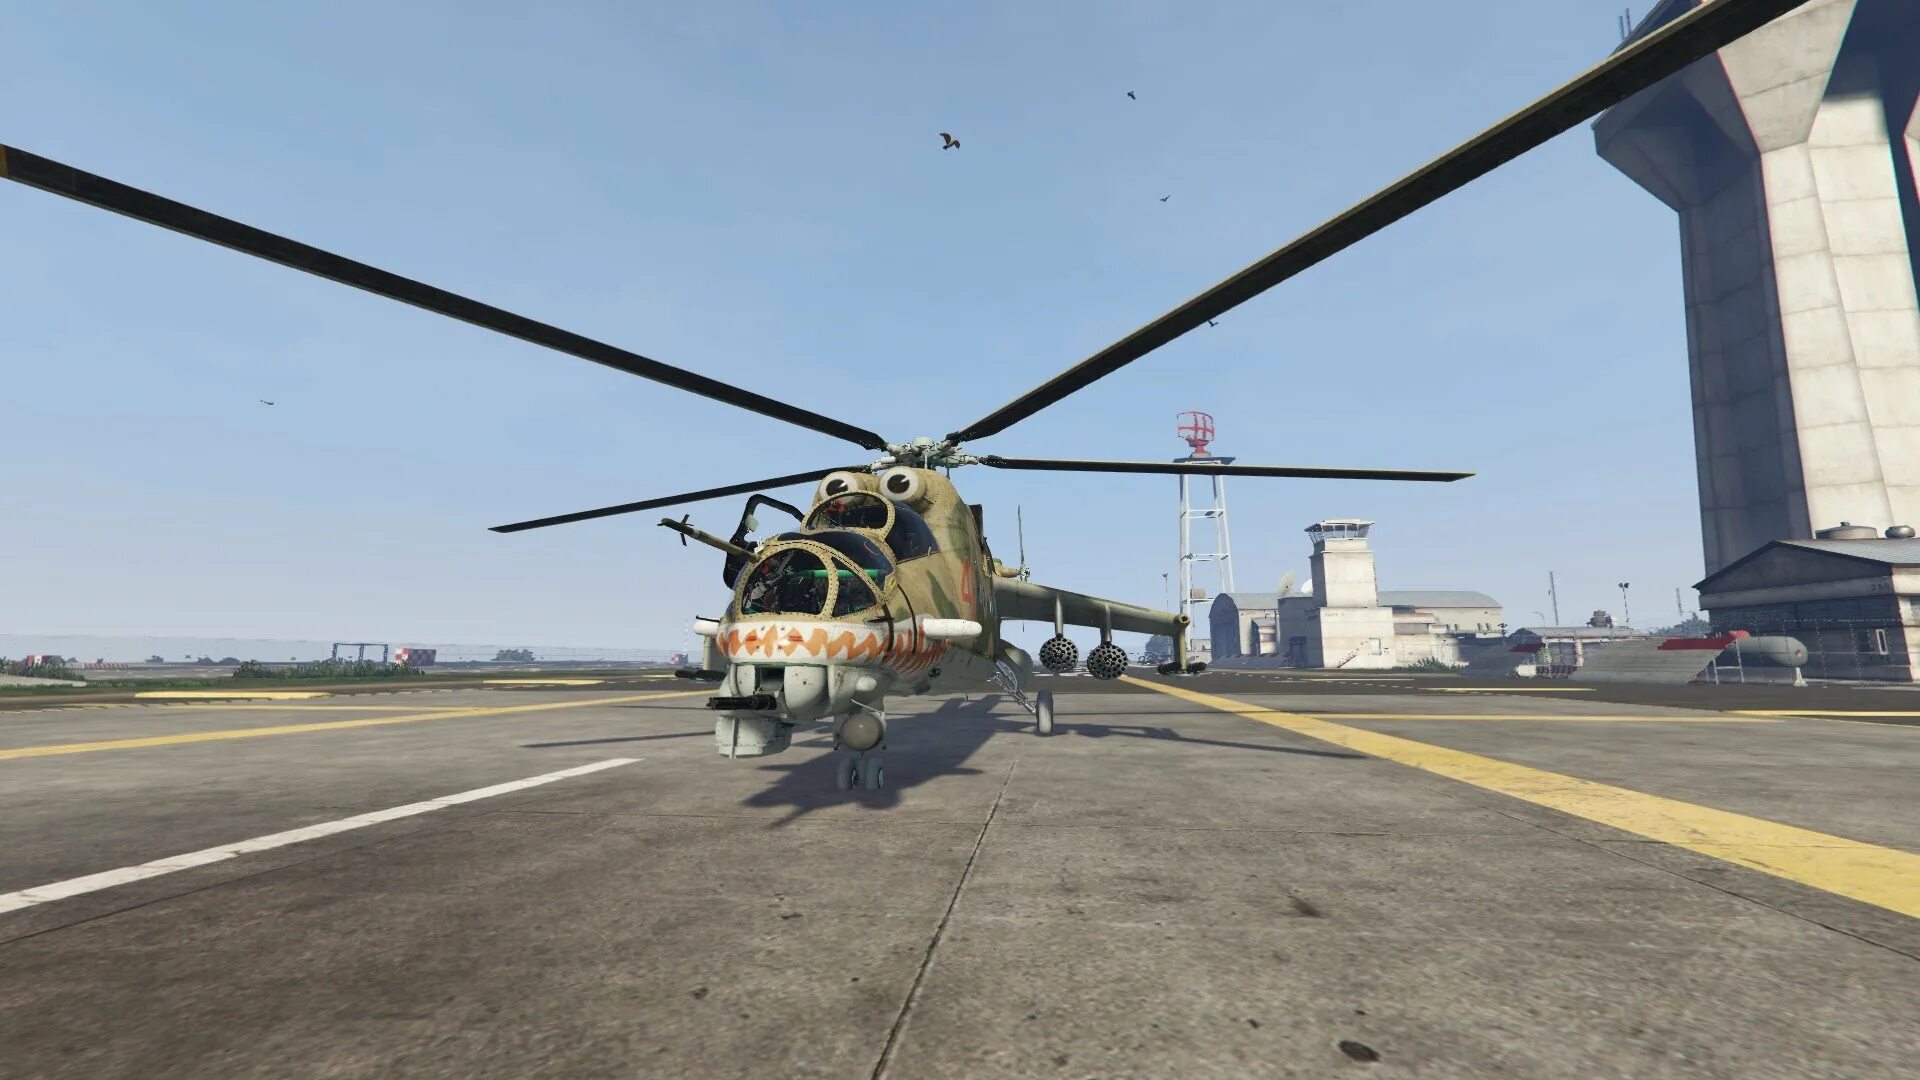 Код на вертолет 5